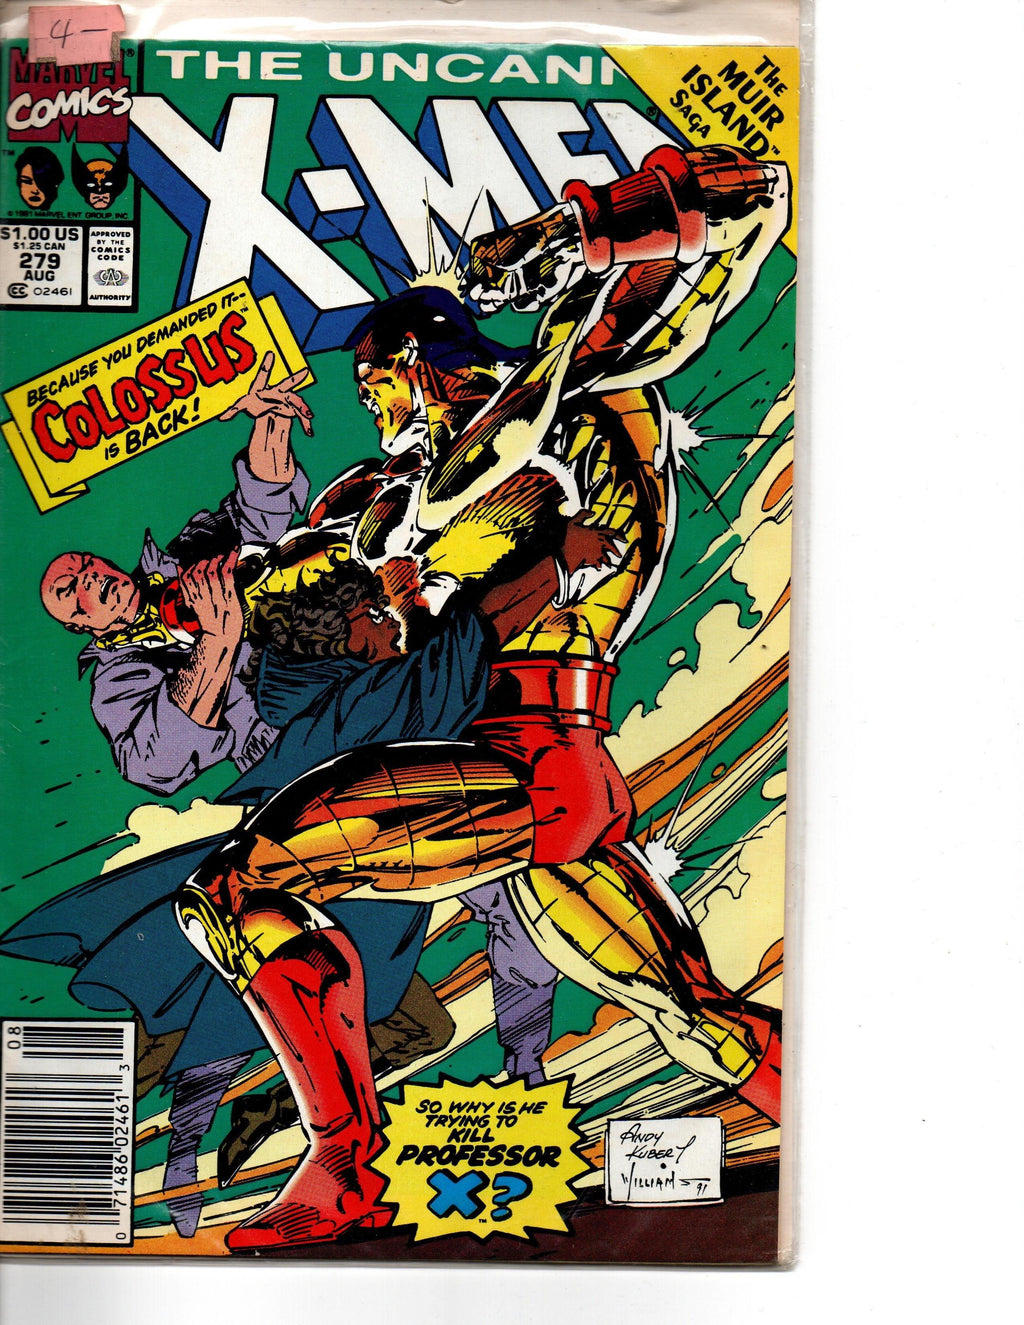 THE UNCANNY X-MEN #279 (1ST SERIES 1963) AUG 1991